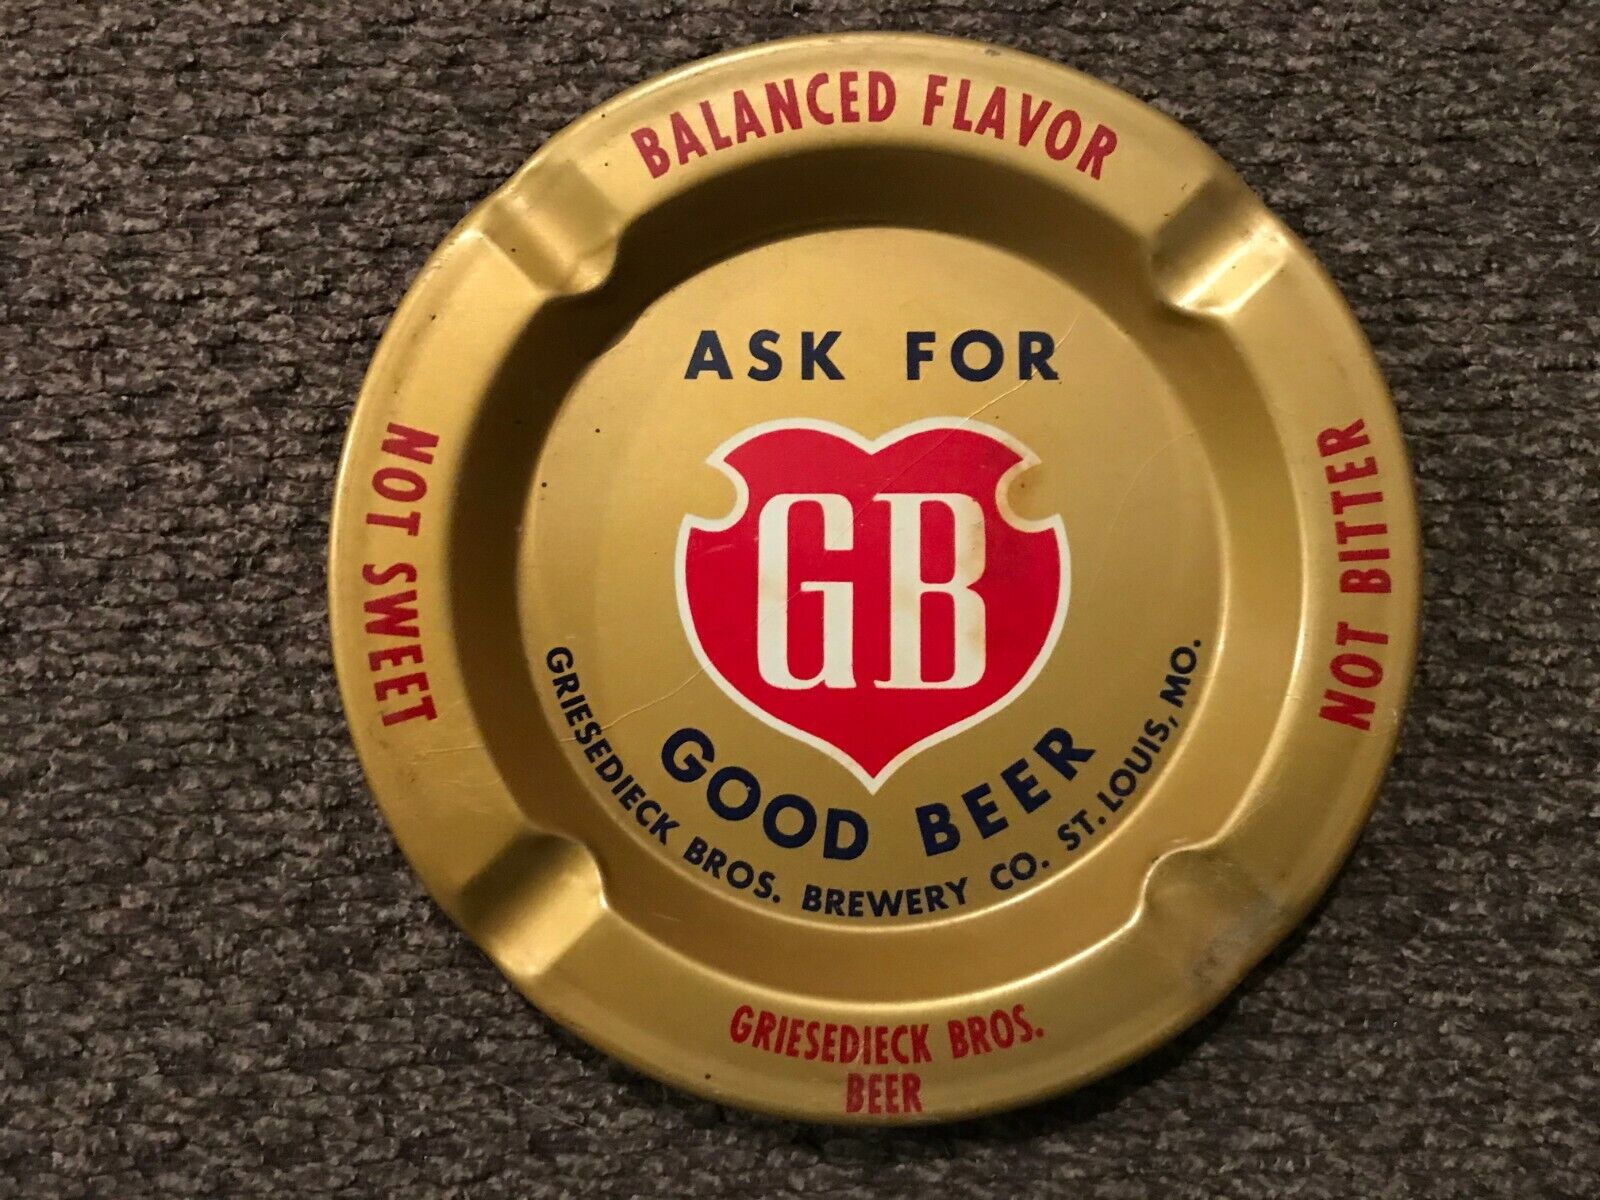 GOOD BEER GB Metal Ashtray Griesedieck Bros Brewery Co St. Louis MO Vintage 